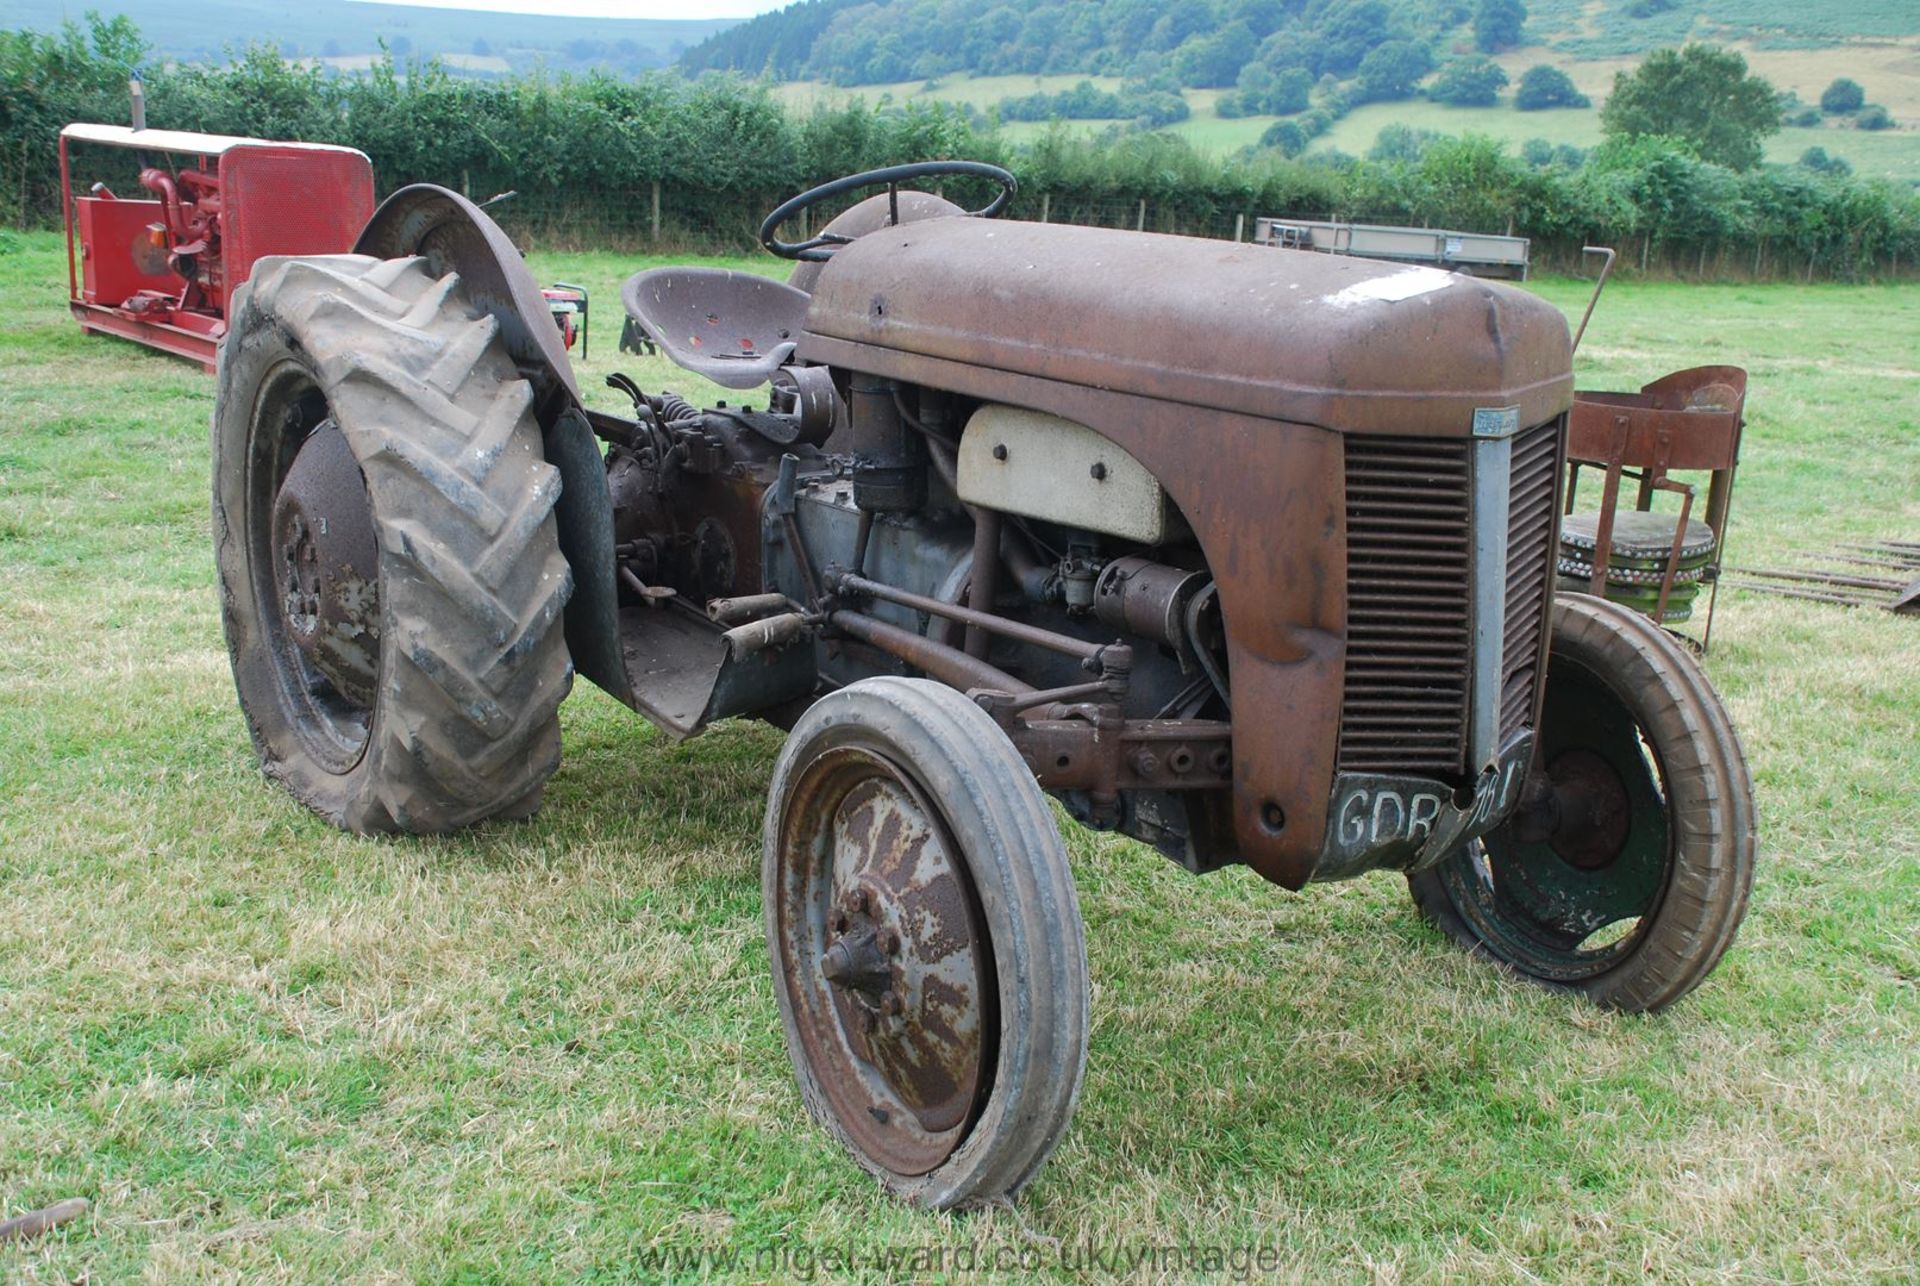 A Ferguson T20 petrol/T.V.O. tractor for restoration. serial no. ED 224444.